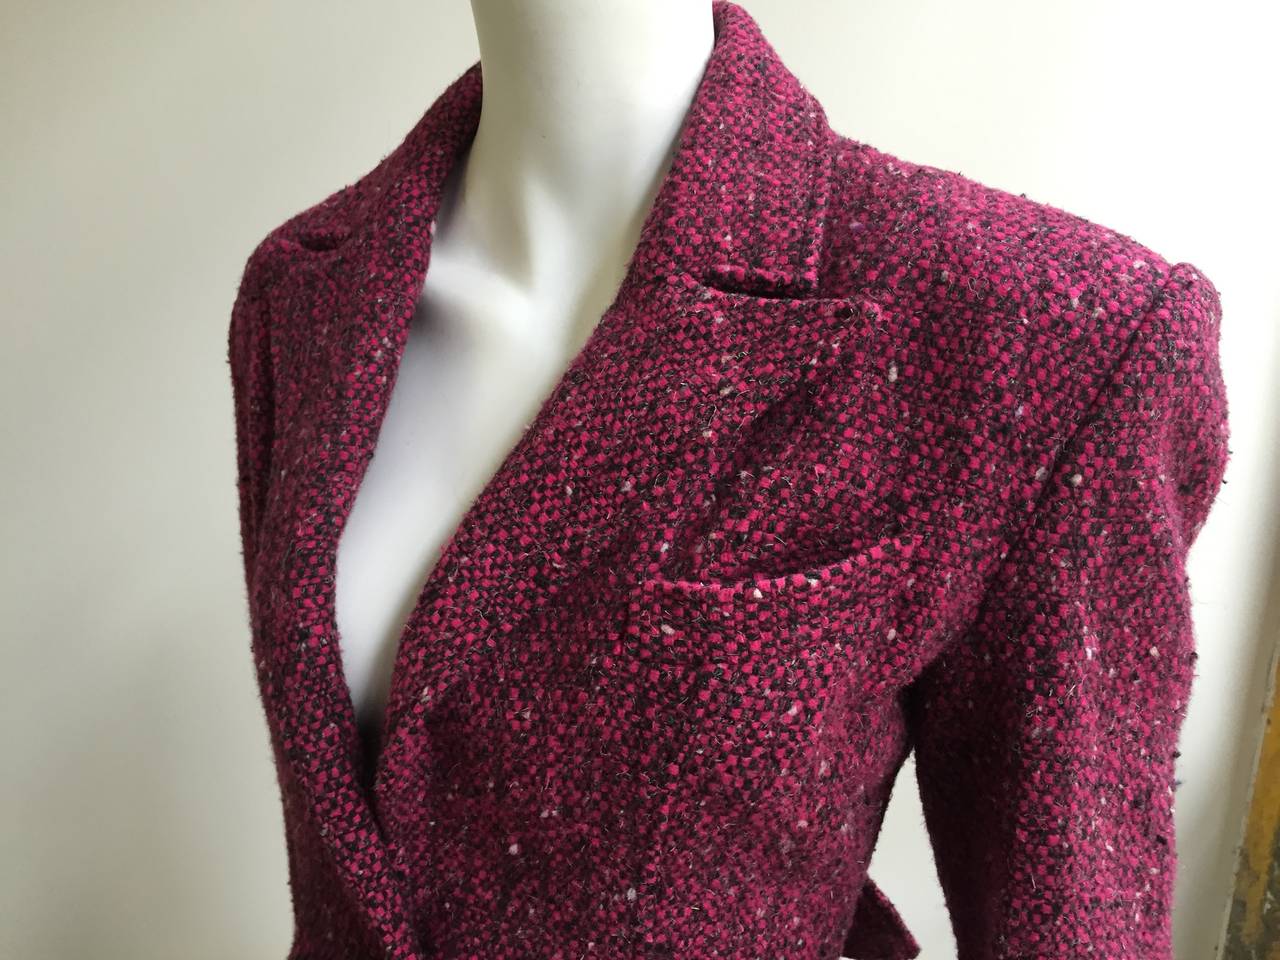 Patrick Kelly Paris 1988 wool suit size 4. 3